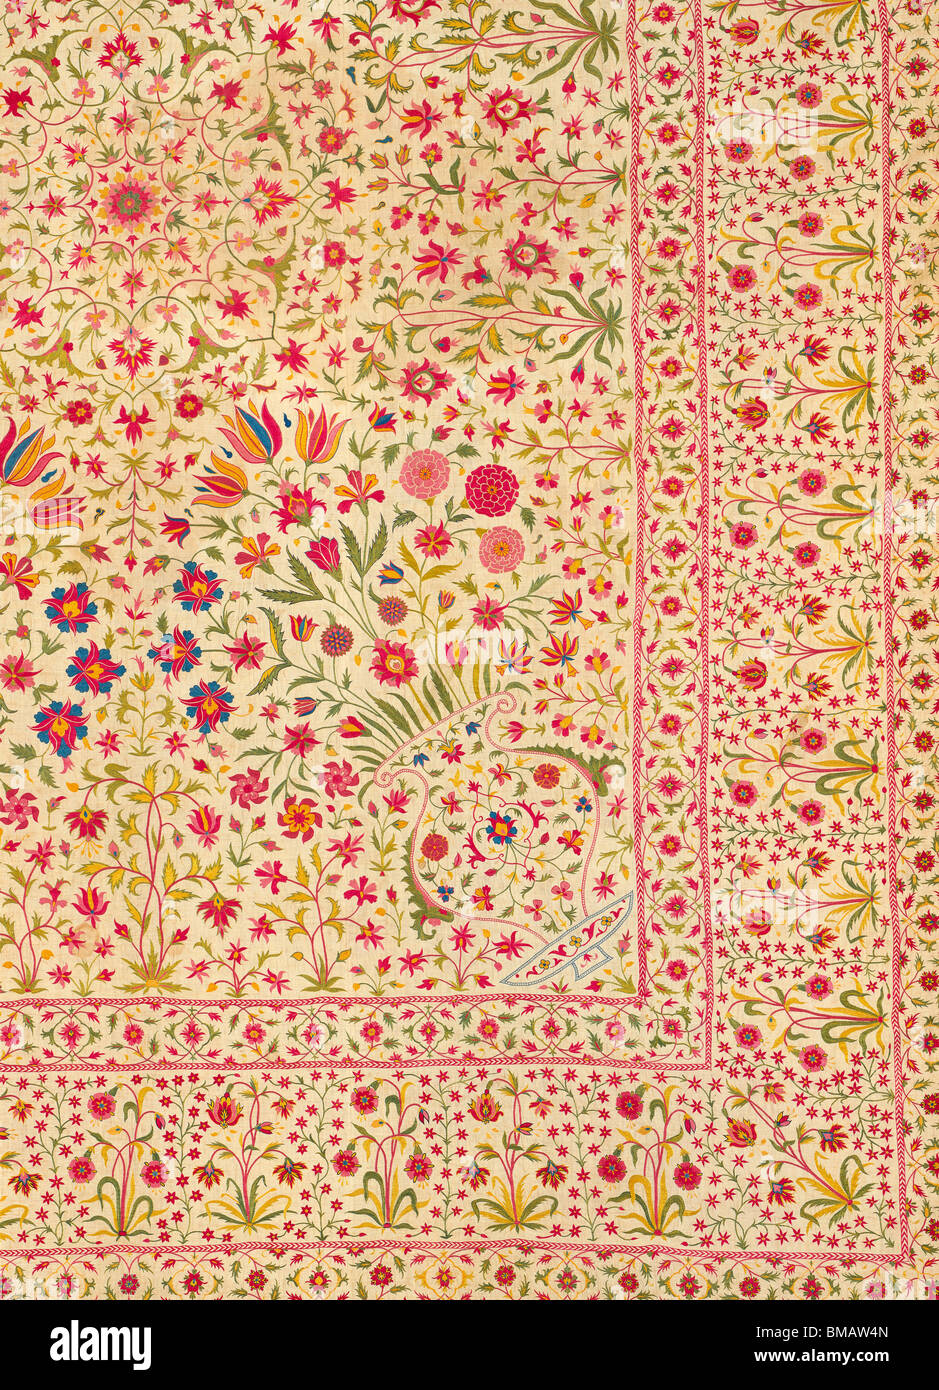 Floorspread, détail. L'Inde, 18e siècle Banque D'Images